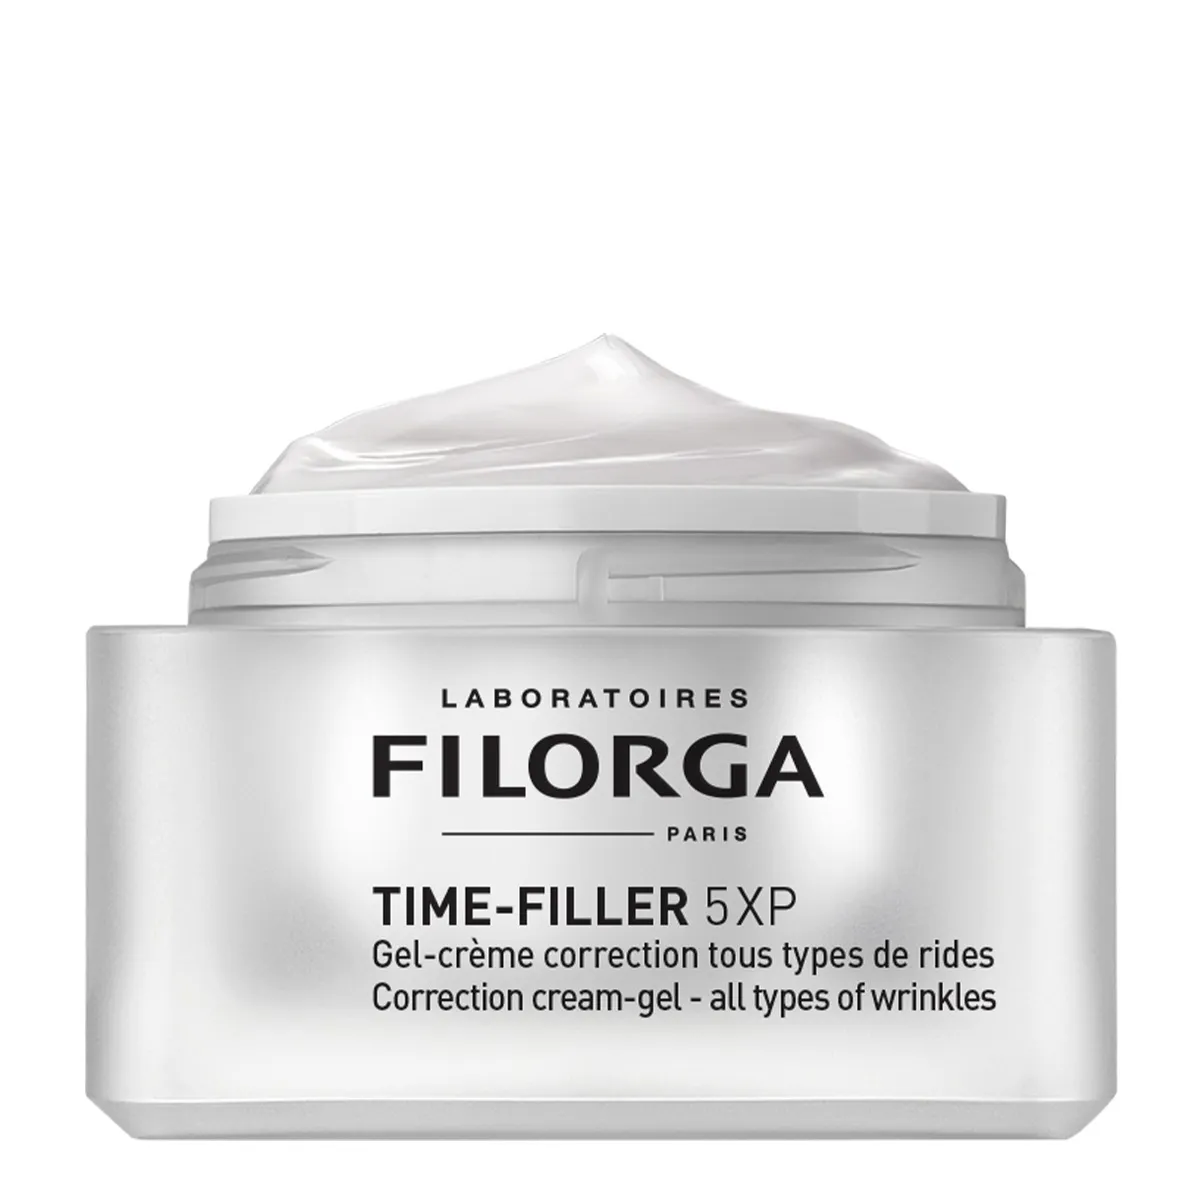 Filorga Time-Filler 5XP Crema Gel 50 ml Correttiva Per 5 Tipi Di Rughe, Viso E Collo